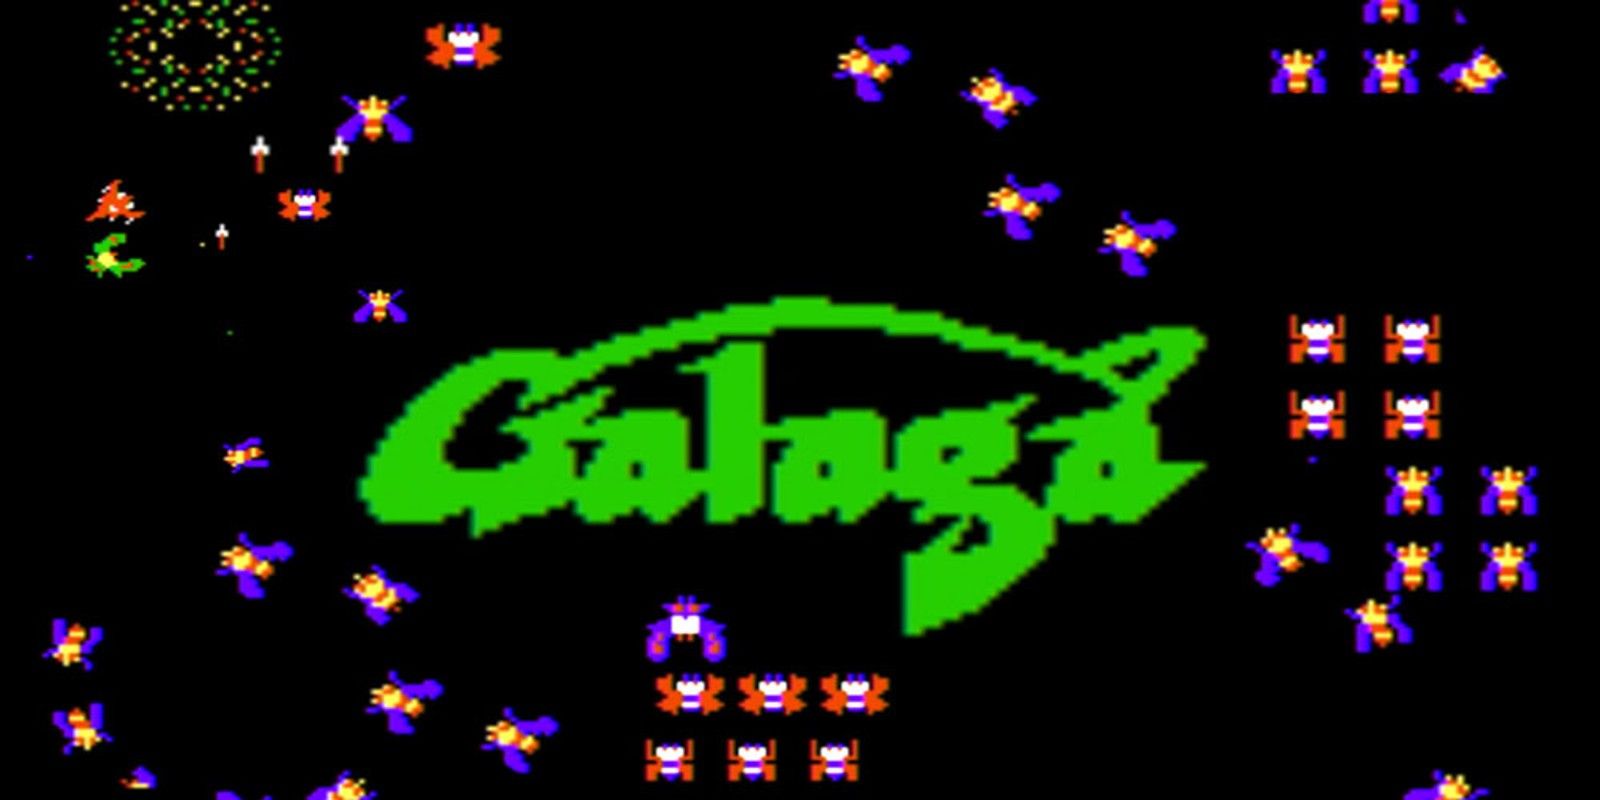 Galaga Title Screen